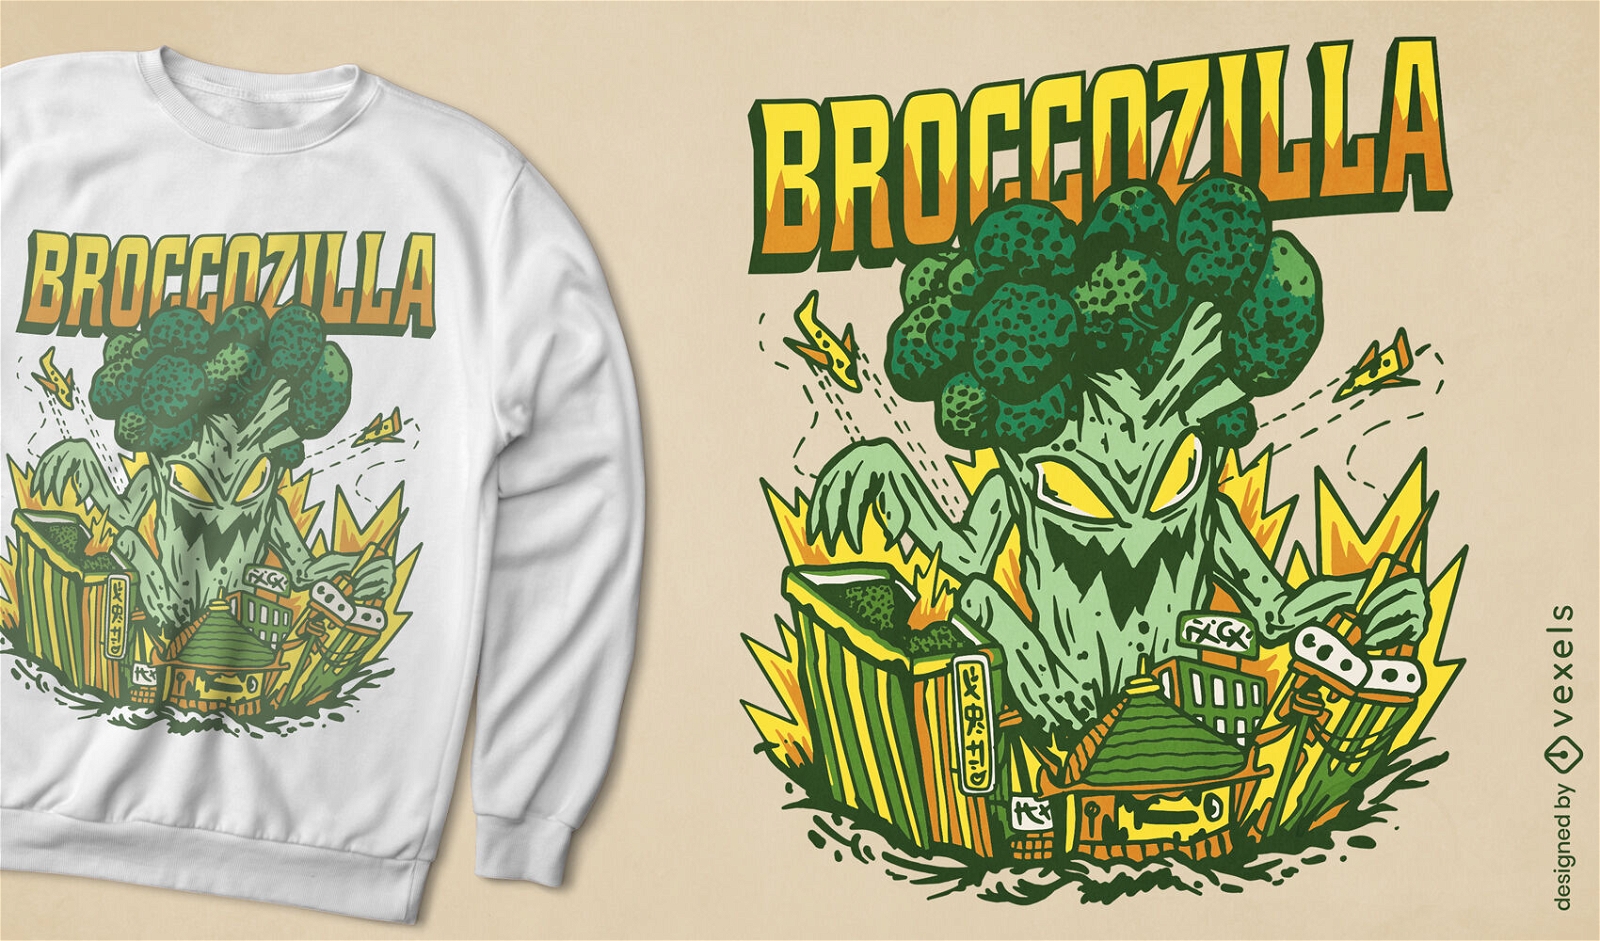 Riesiger Brokkoli greift Stadt-T-Shirt-Design an